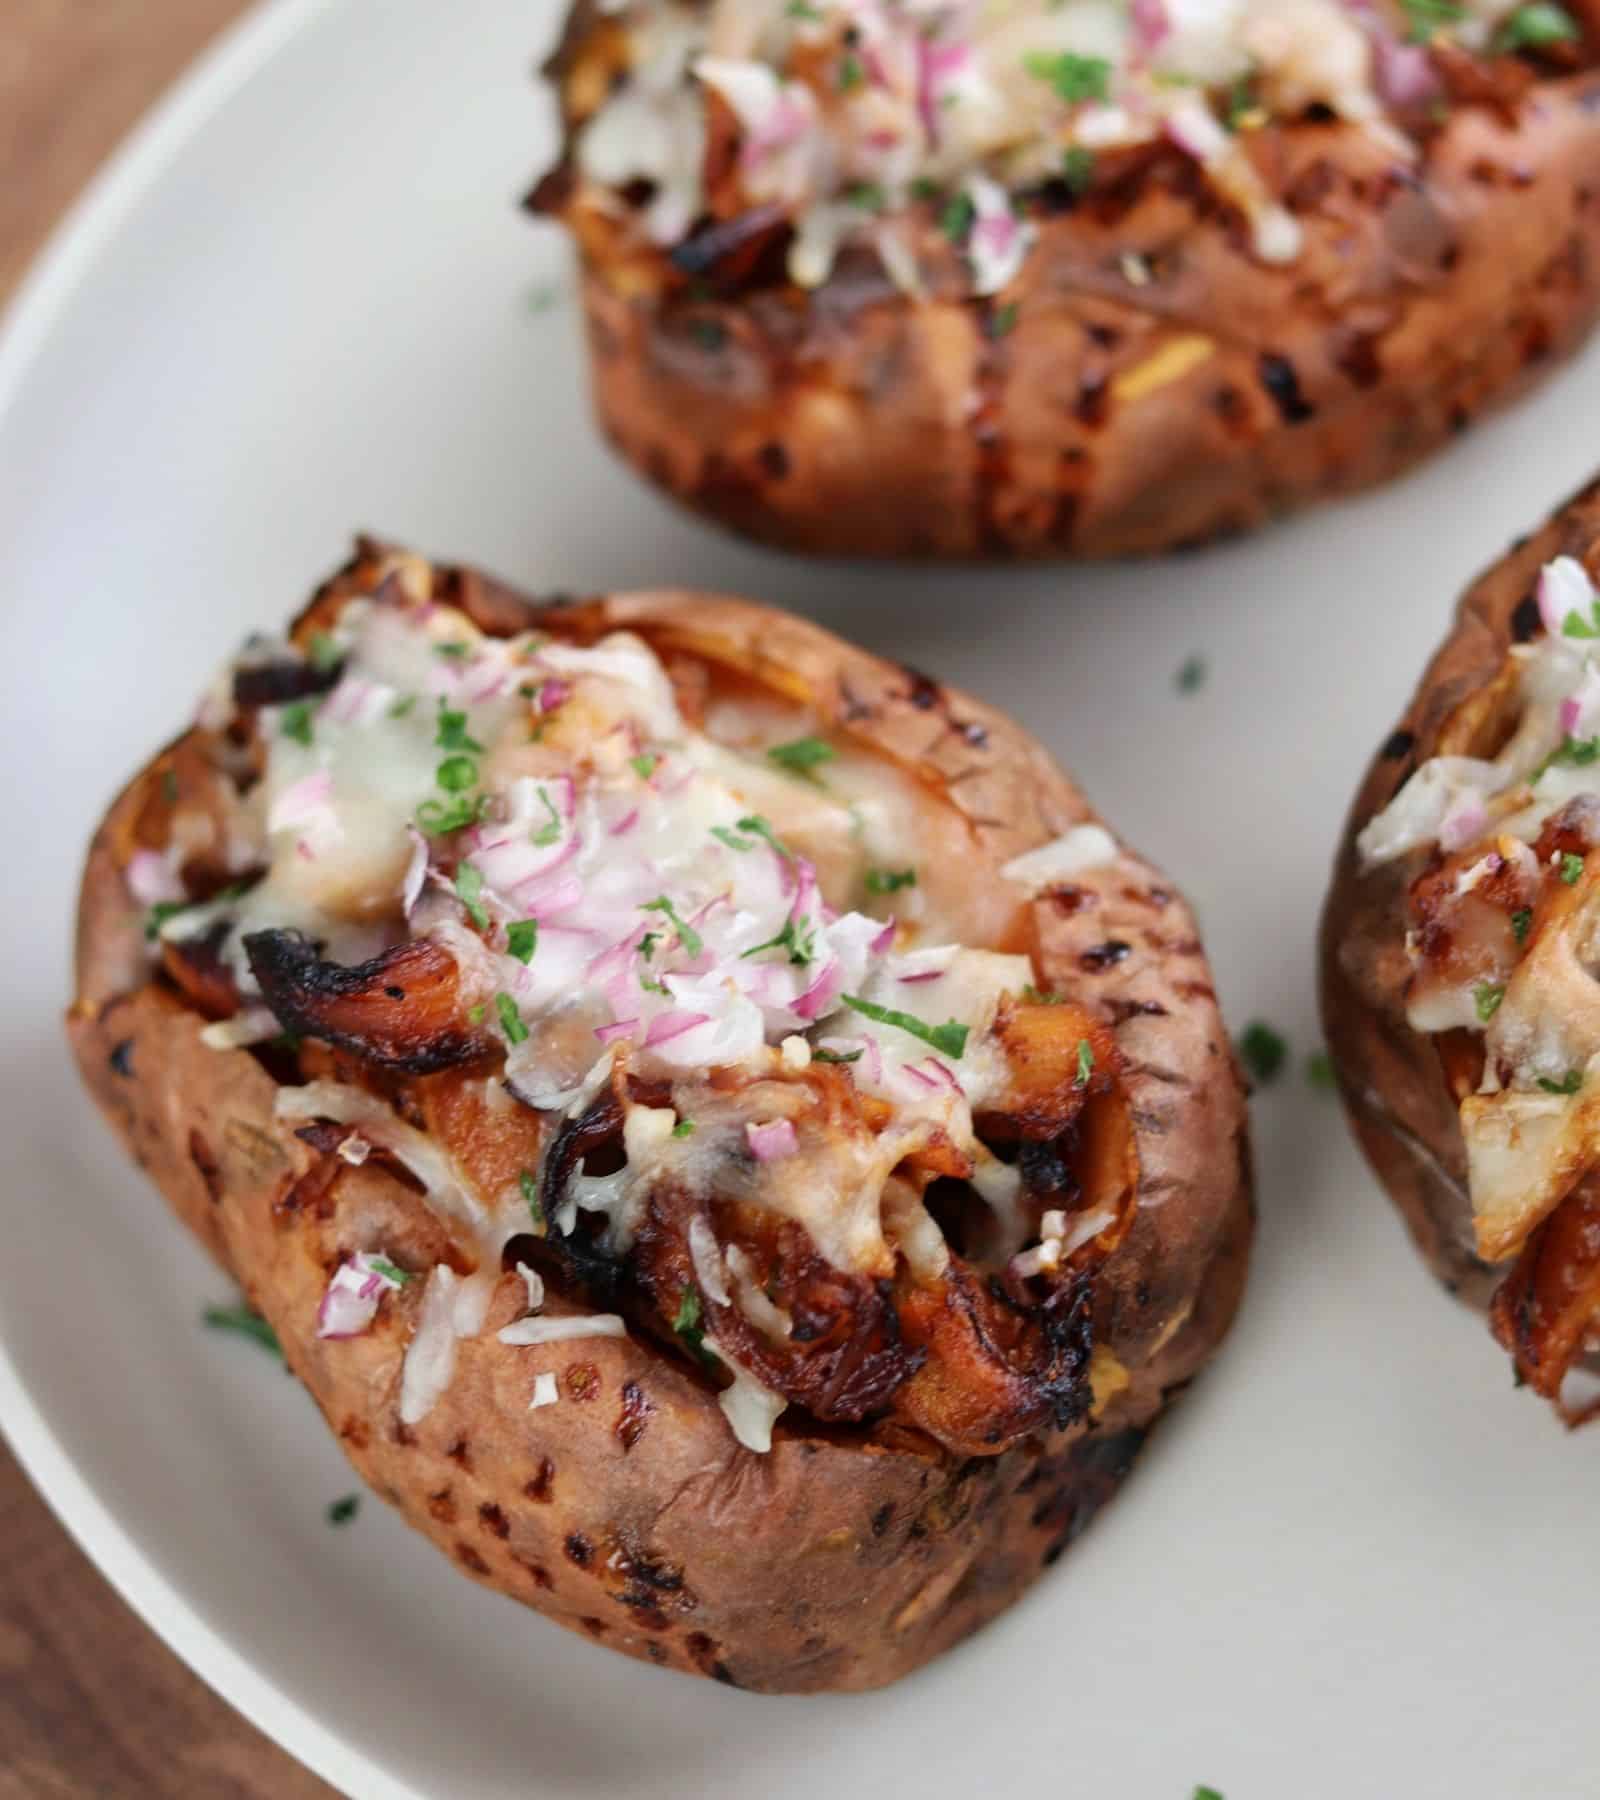 https://masonfit.com/wp-content/uploads/2020/10/BBQ-chicken-stuffed-air-fryer-baked-sweet-potatoes.jpg